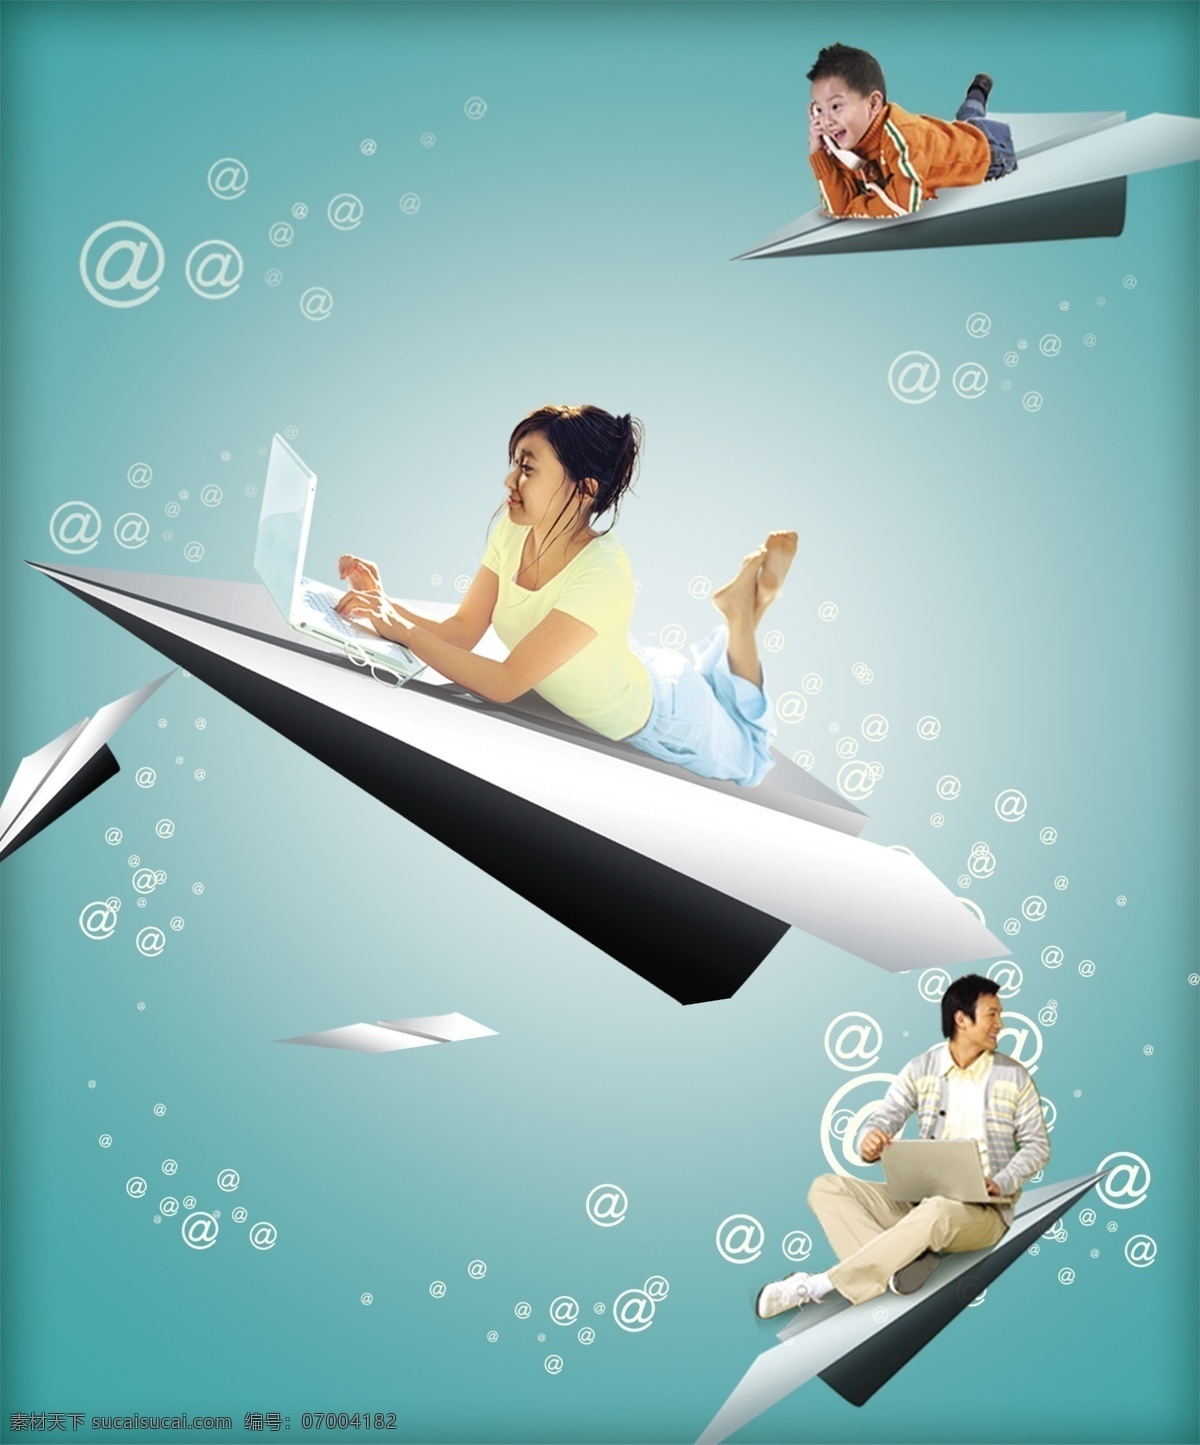 电信 广告设计模板 国内广告设计 家庭 宽带 源文件库 纸飞机 中国电信 广告 图 模板下载 矢量图 现代科技